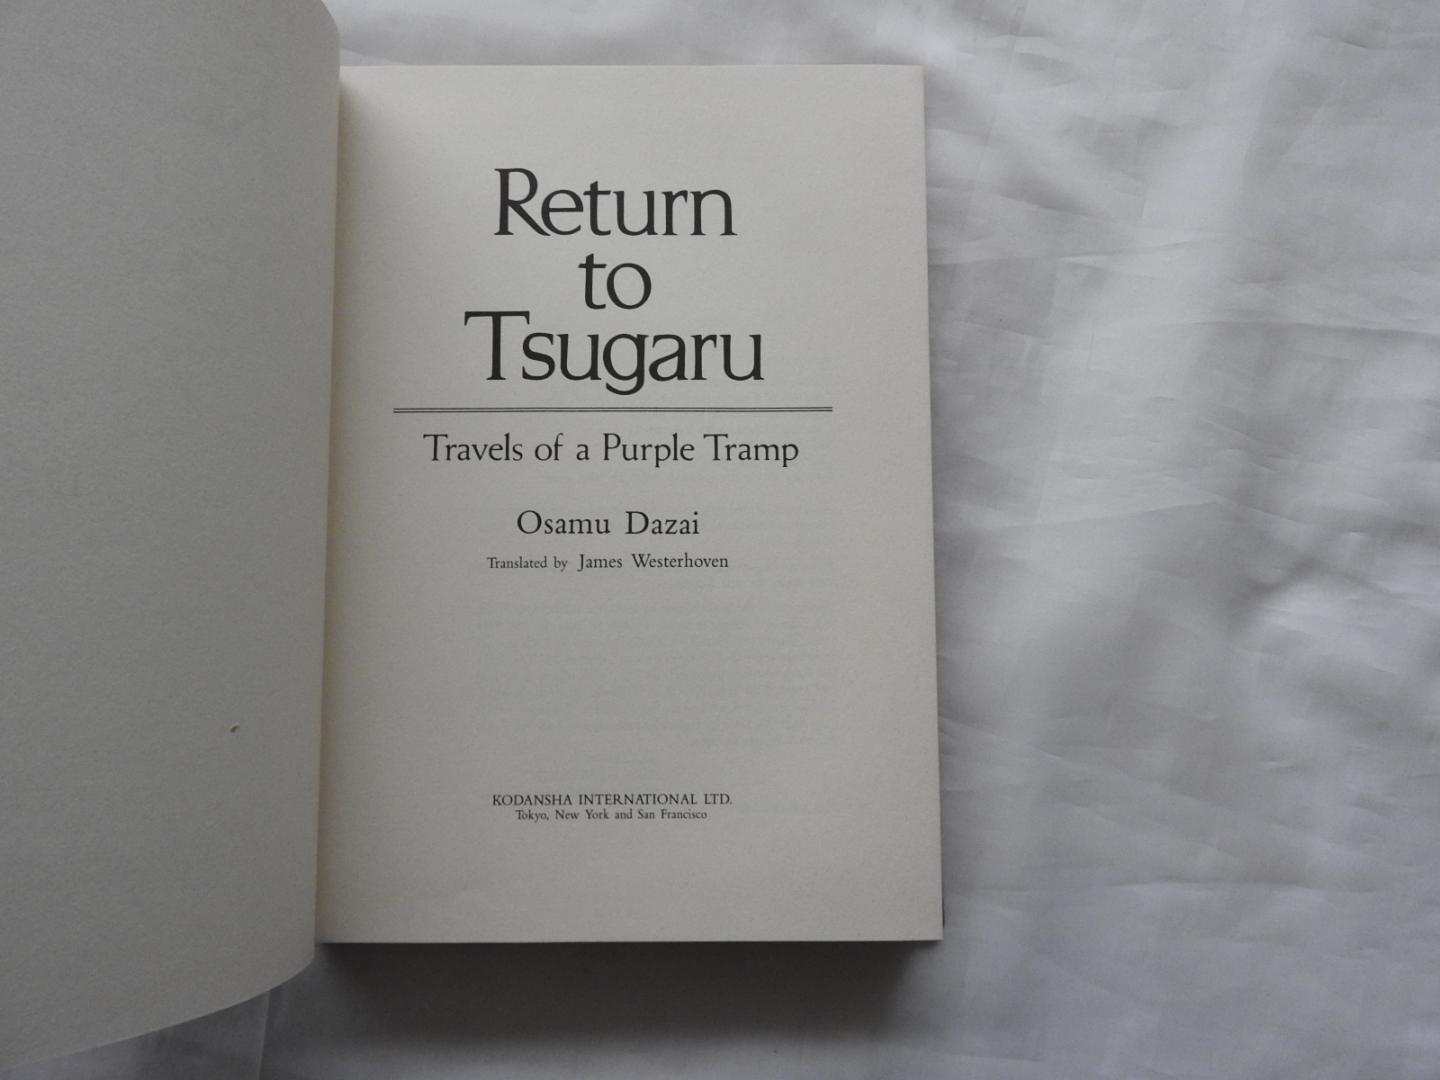 James Westerhoven - Osamu Dazai - 太宰, 治, - Return to Tsugaru - travels of a purple tramp.